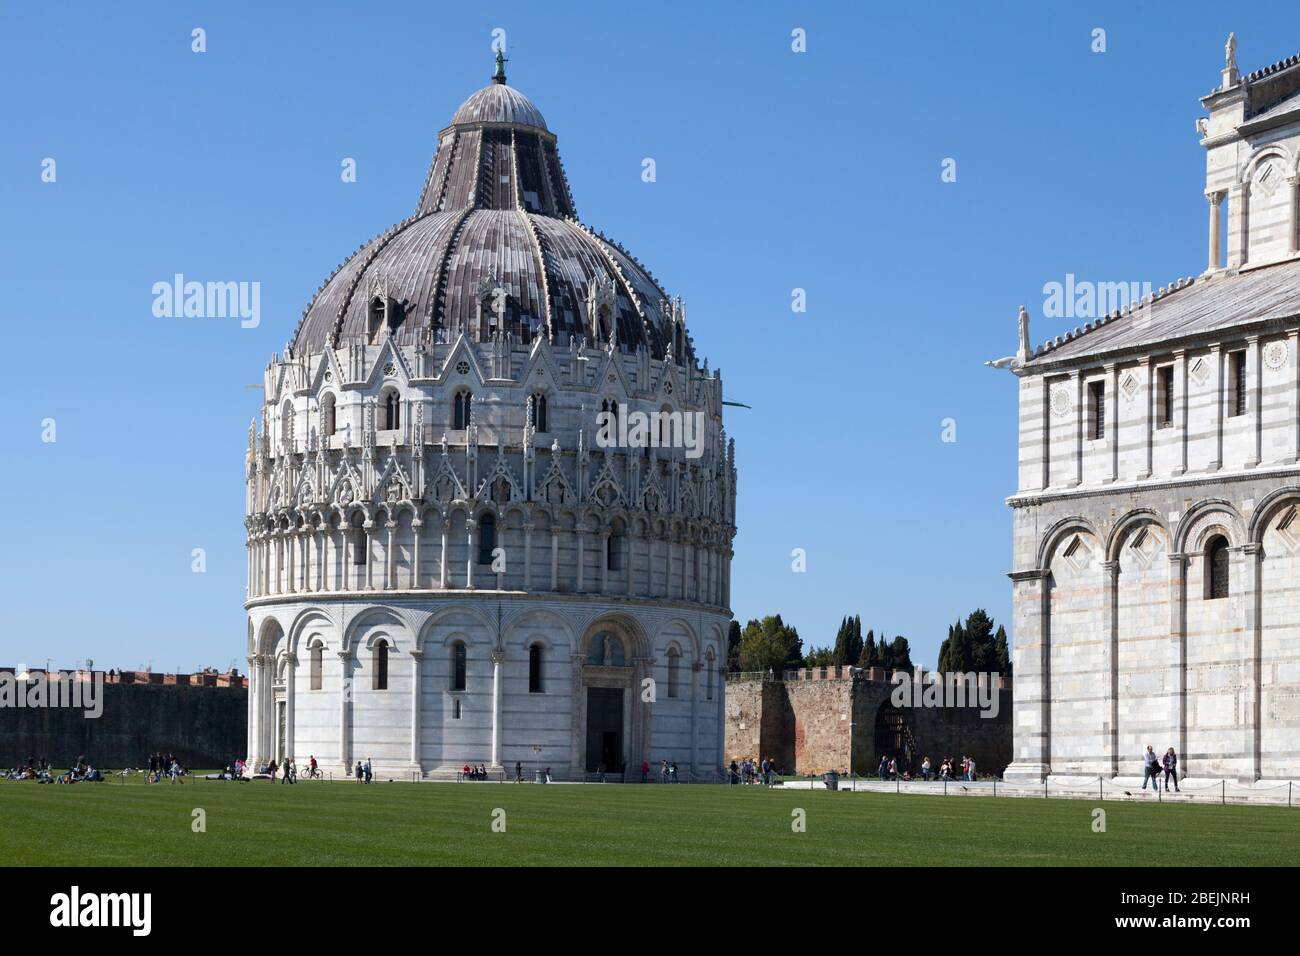 Pisa, Italien - März 31 2019: Piazza dei Miracoli mit dem Baptisterium von Pisa, der Kathedrale von Pisa und einem Teilblick auf die Stadtmauern. Stockfoto